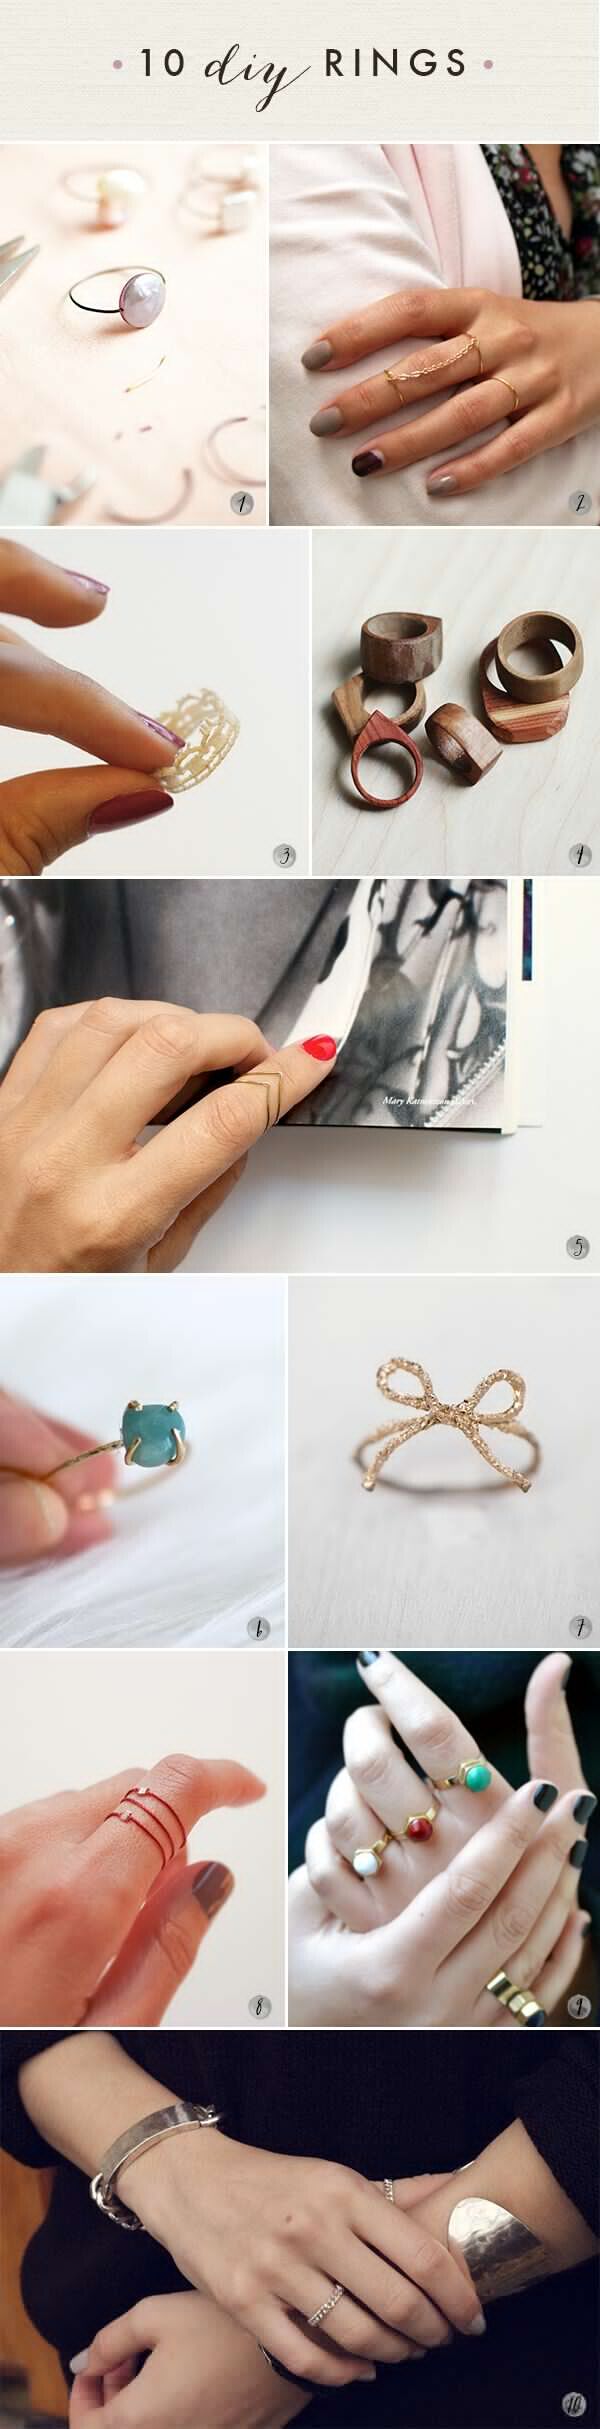 DIY Lovely Rings!